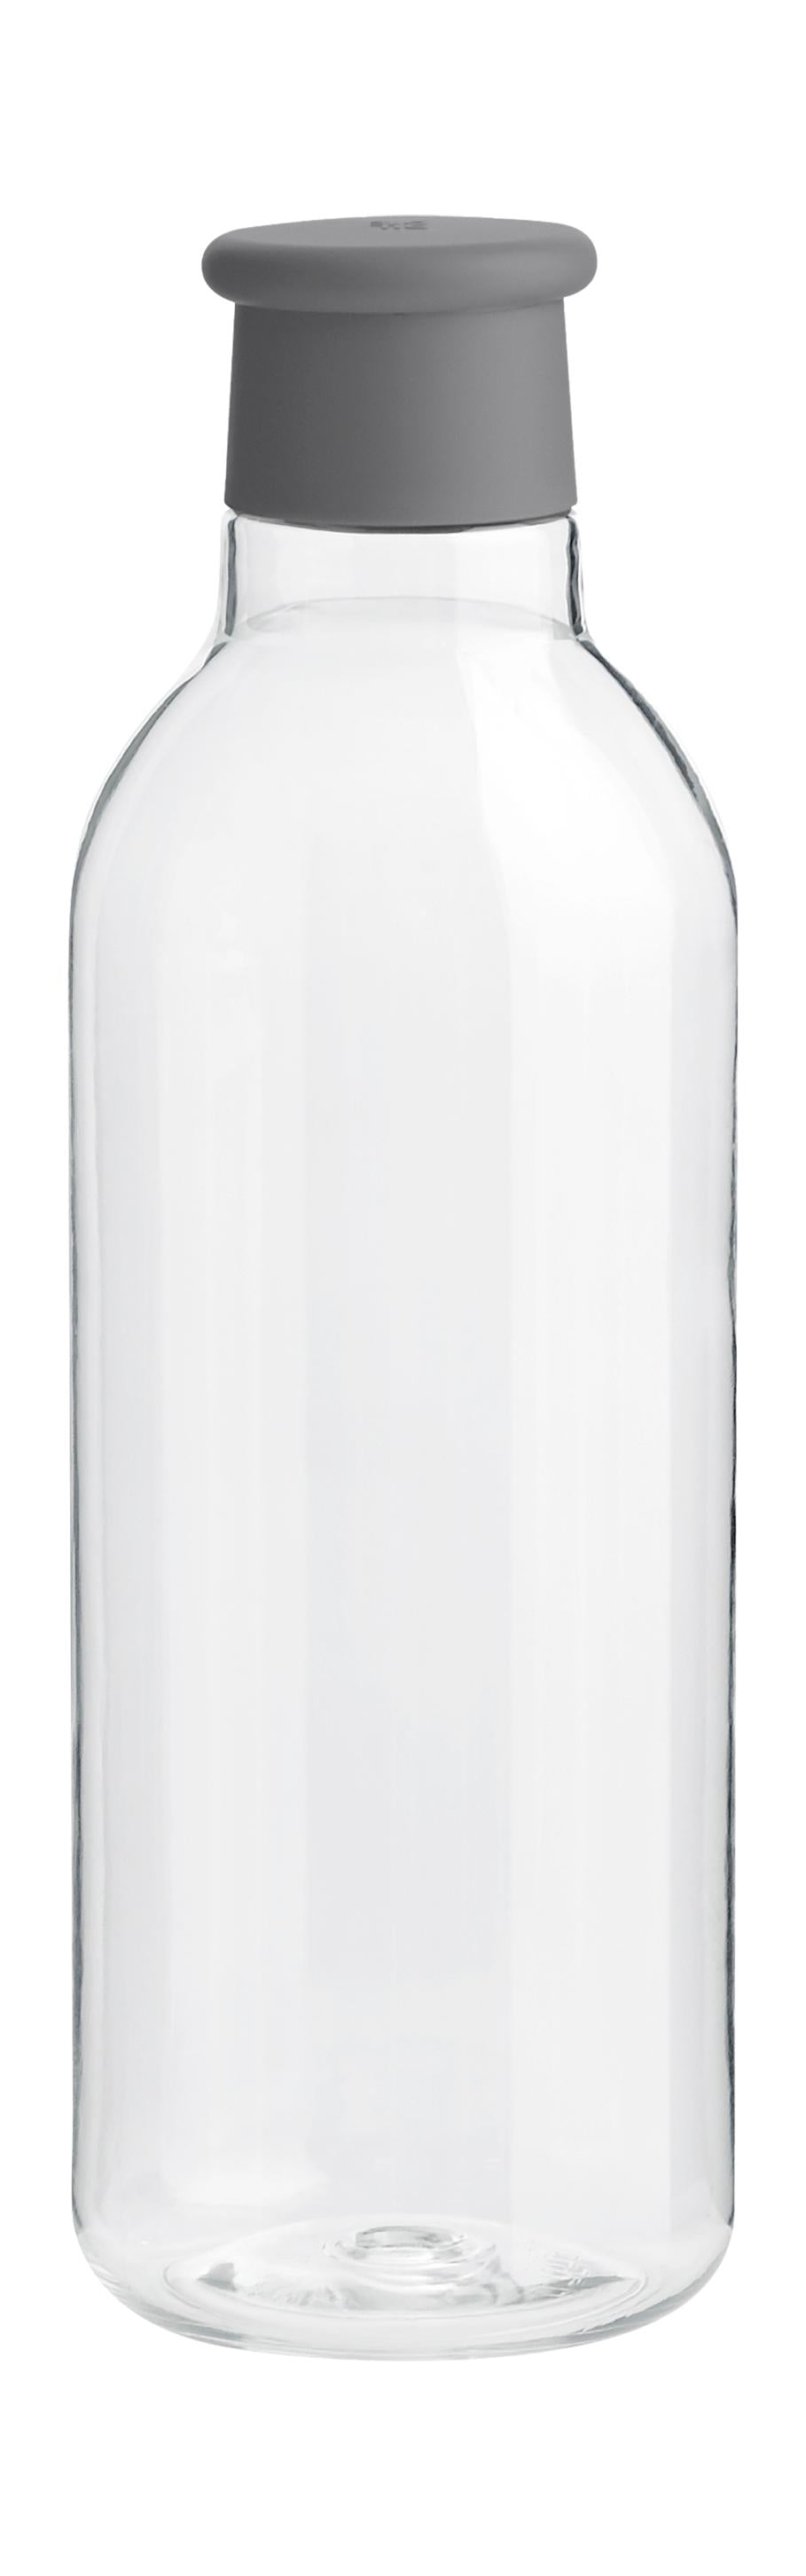 Rig-Tig Dryck-det dricker flaska 0,75 L, grå